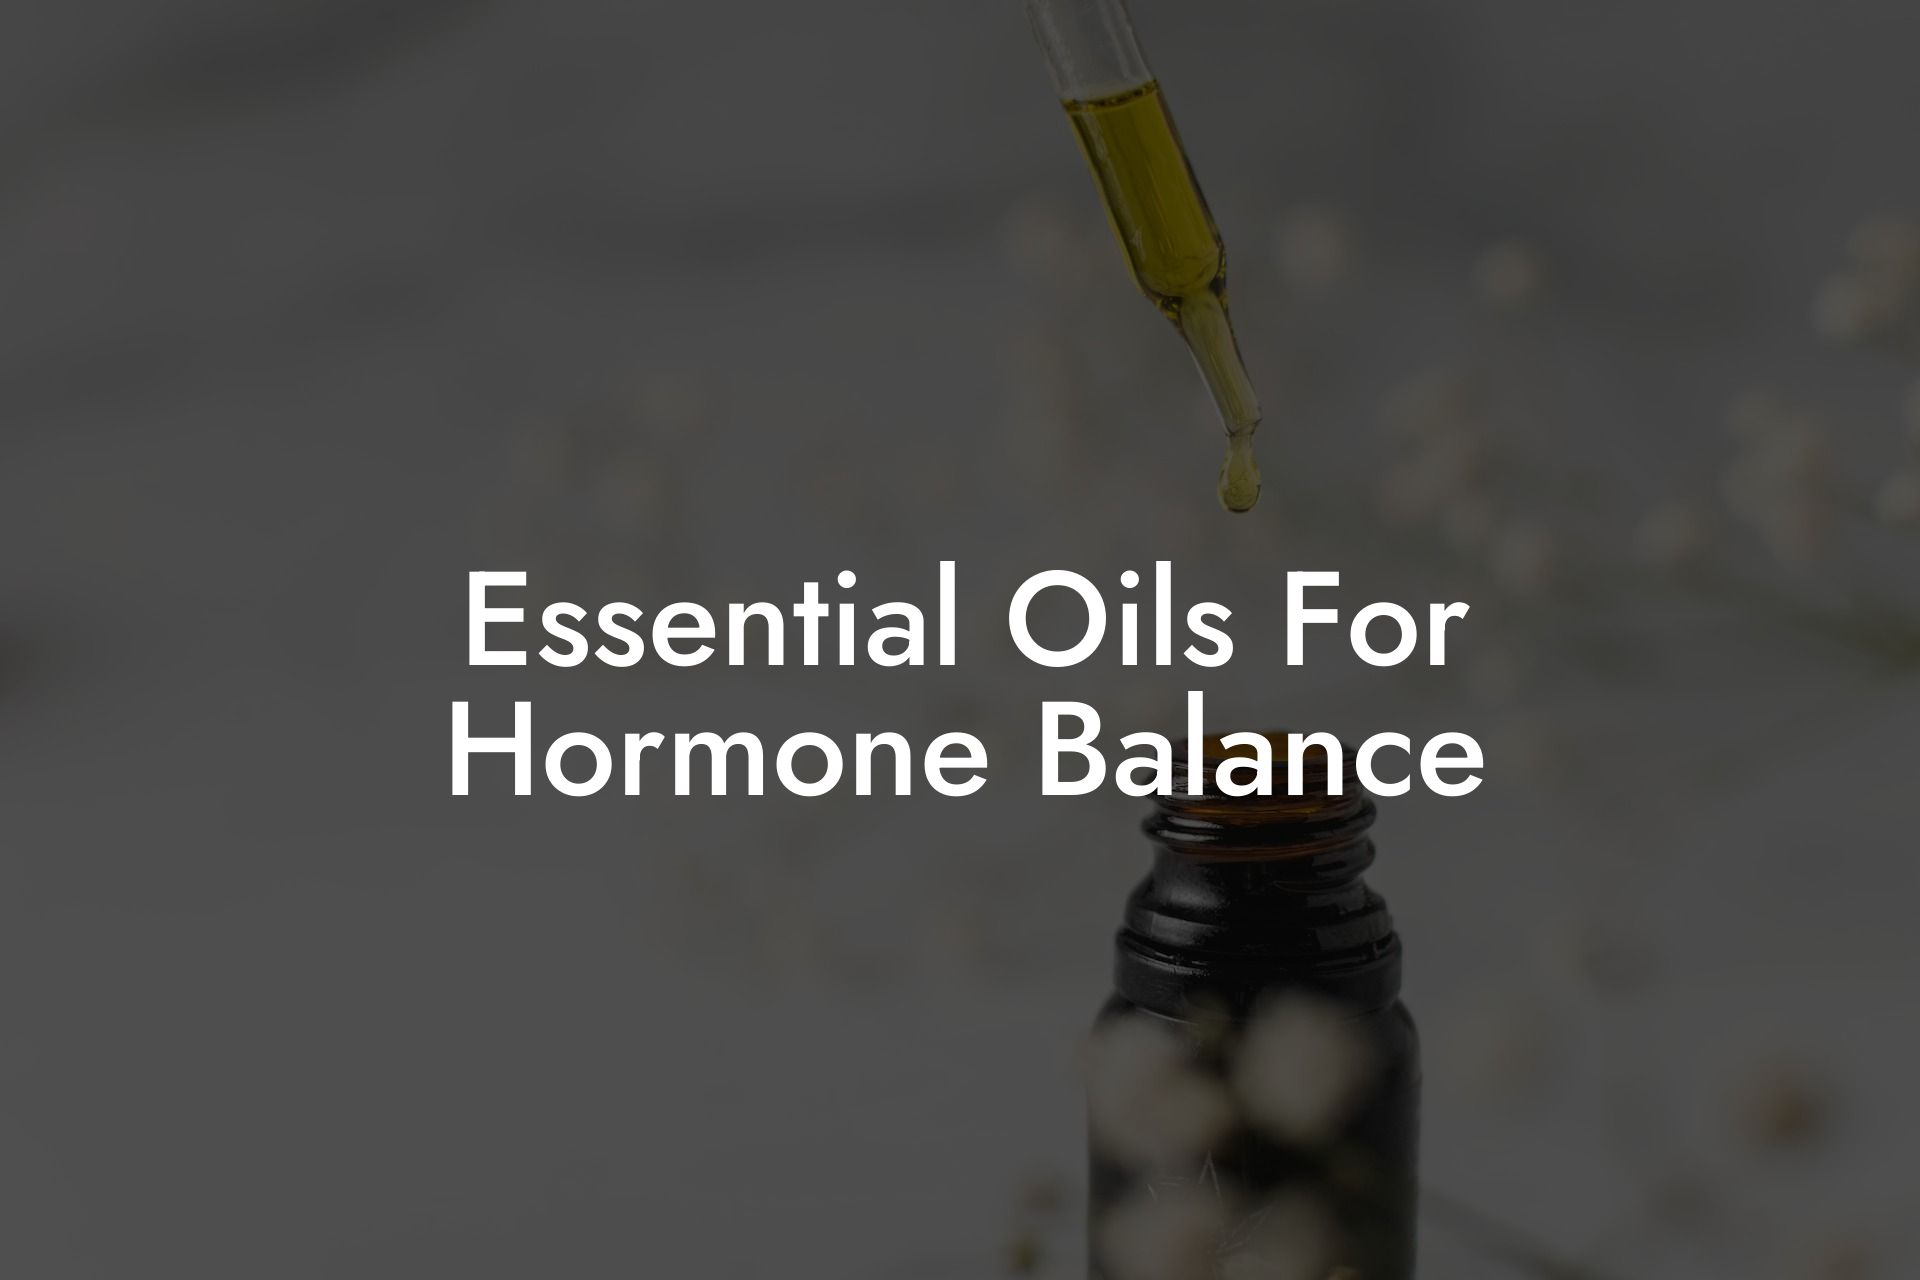 Essential Oils For Hormone Balance